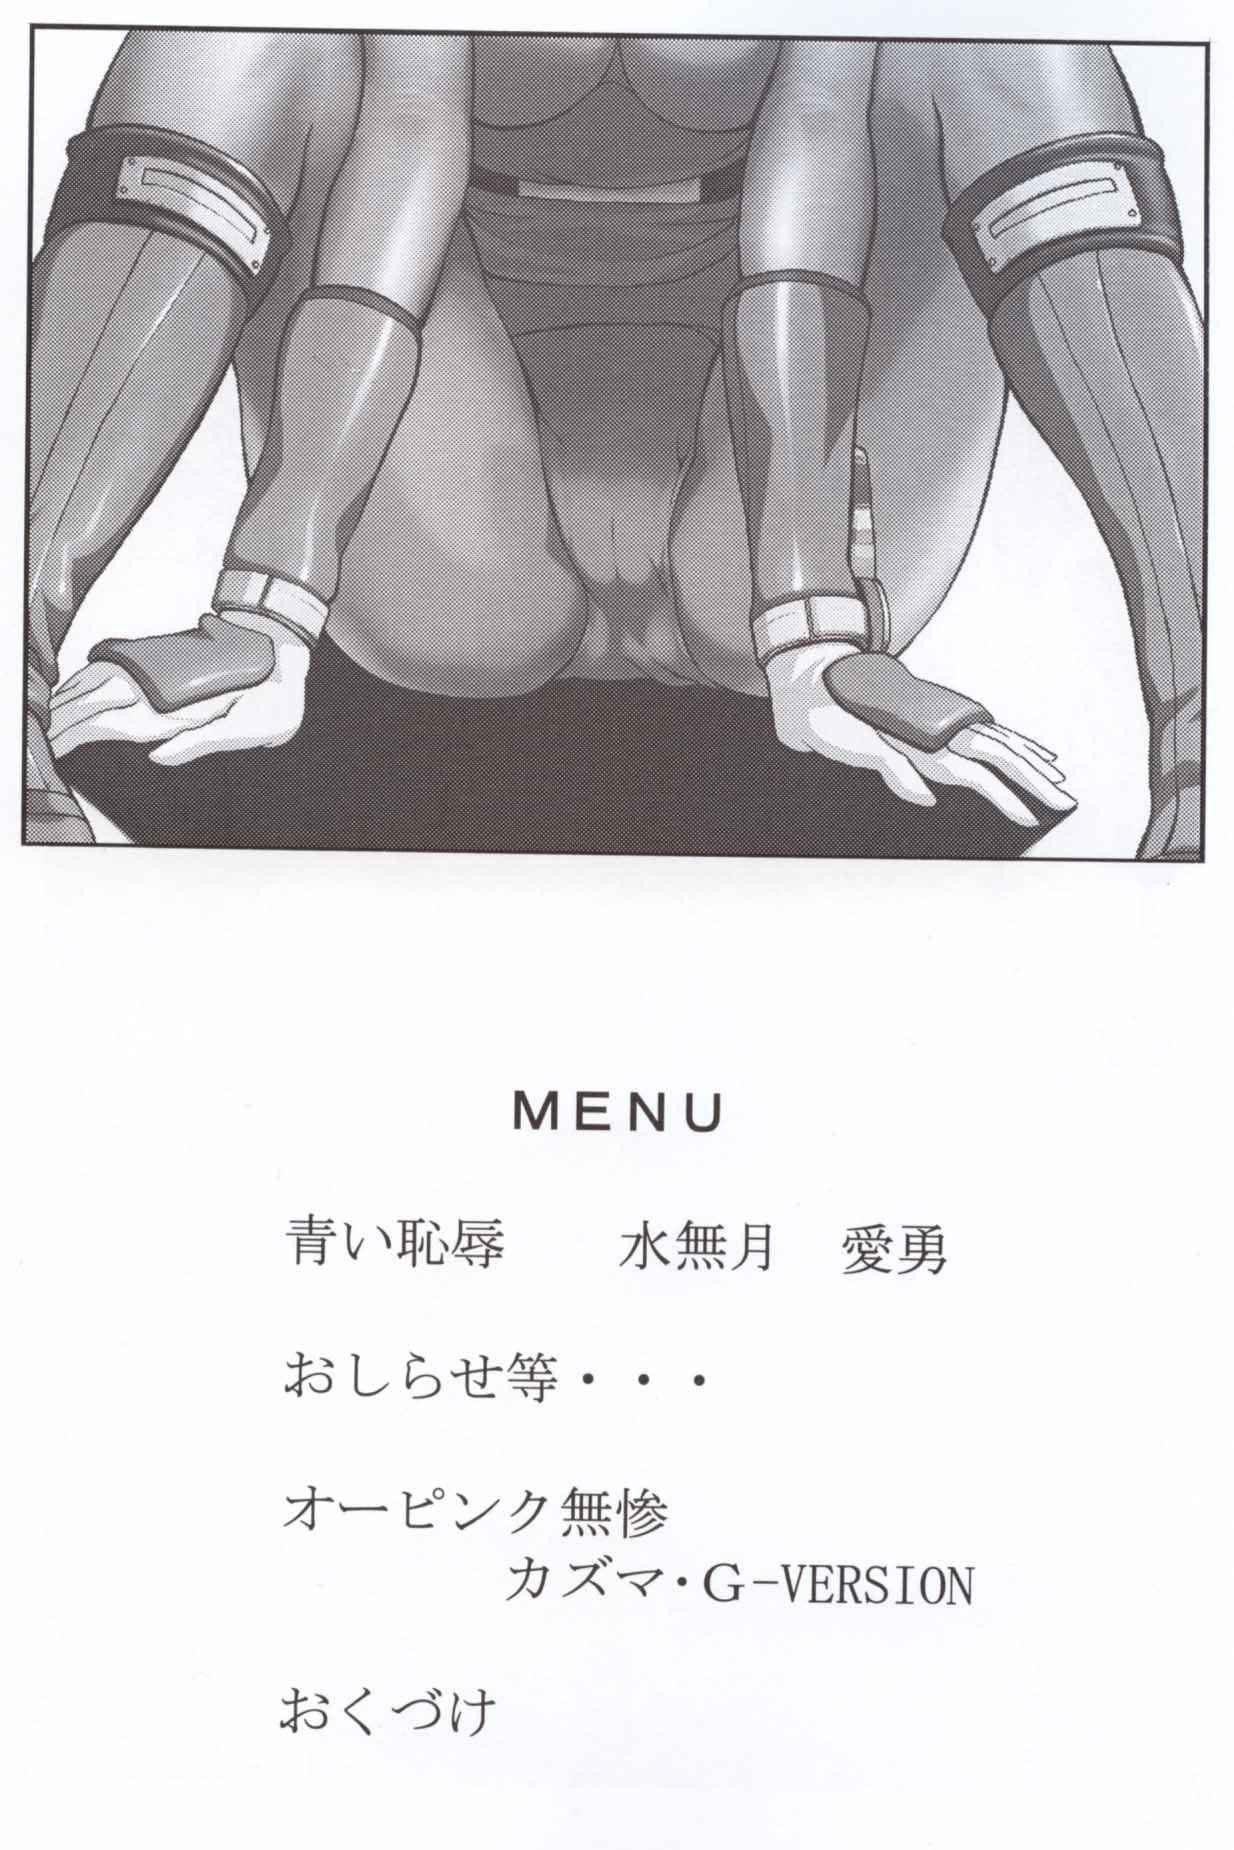 Guys Bishoujo Senshi Gensou Vol 1 Harikenburou Aoi Chijoku - Power rangers Machine - Page 3